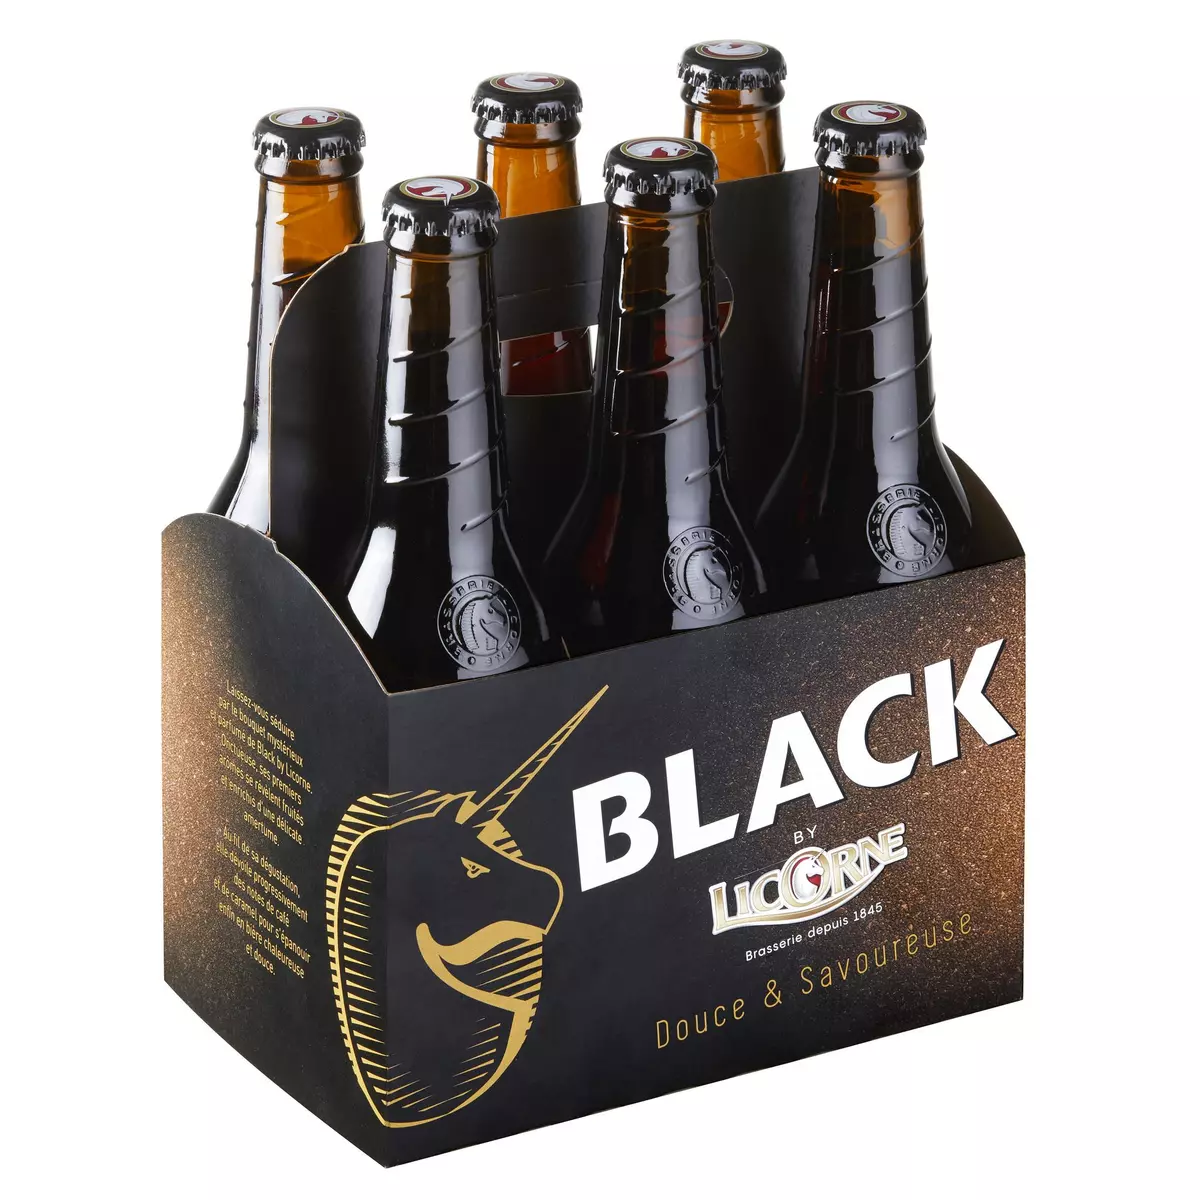 LICORNE Bière black 6% bouteilles 6x33cl